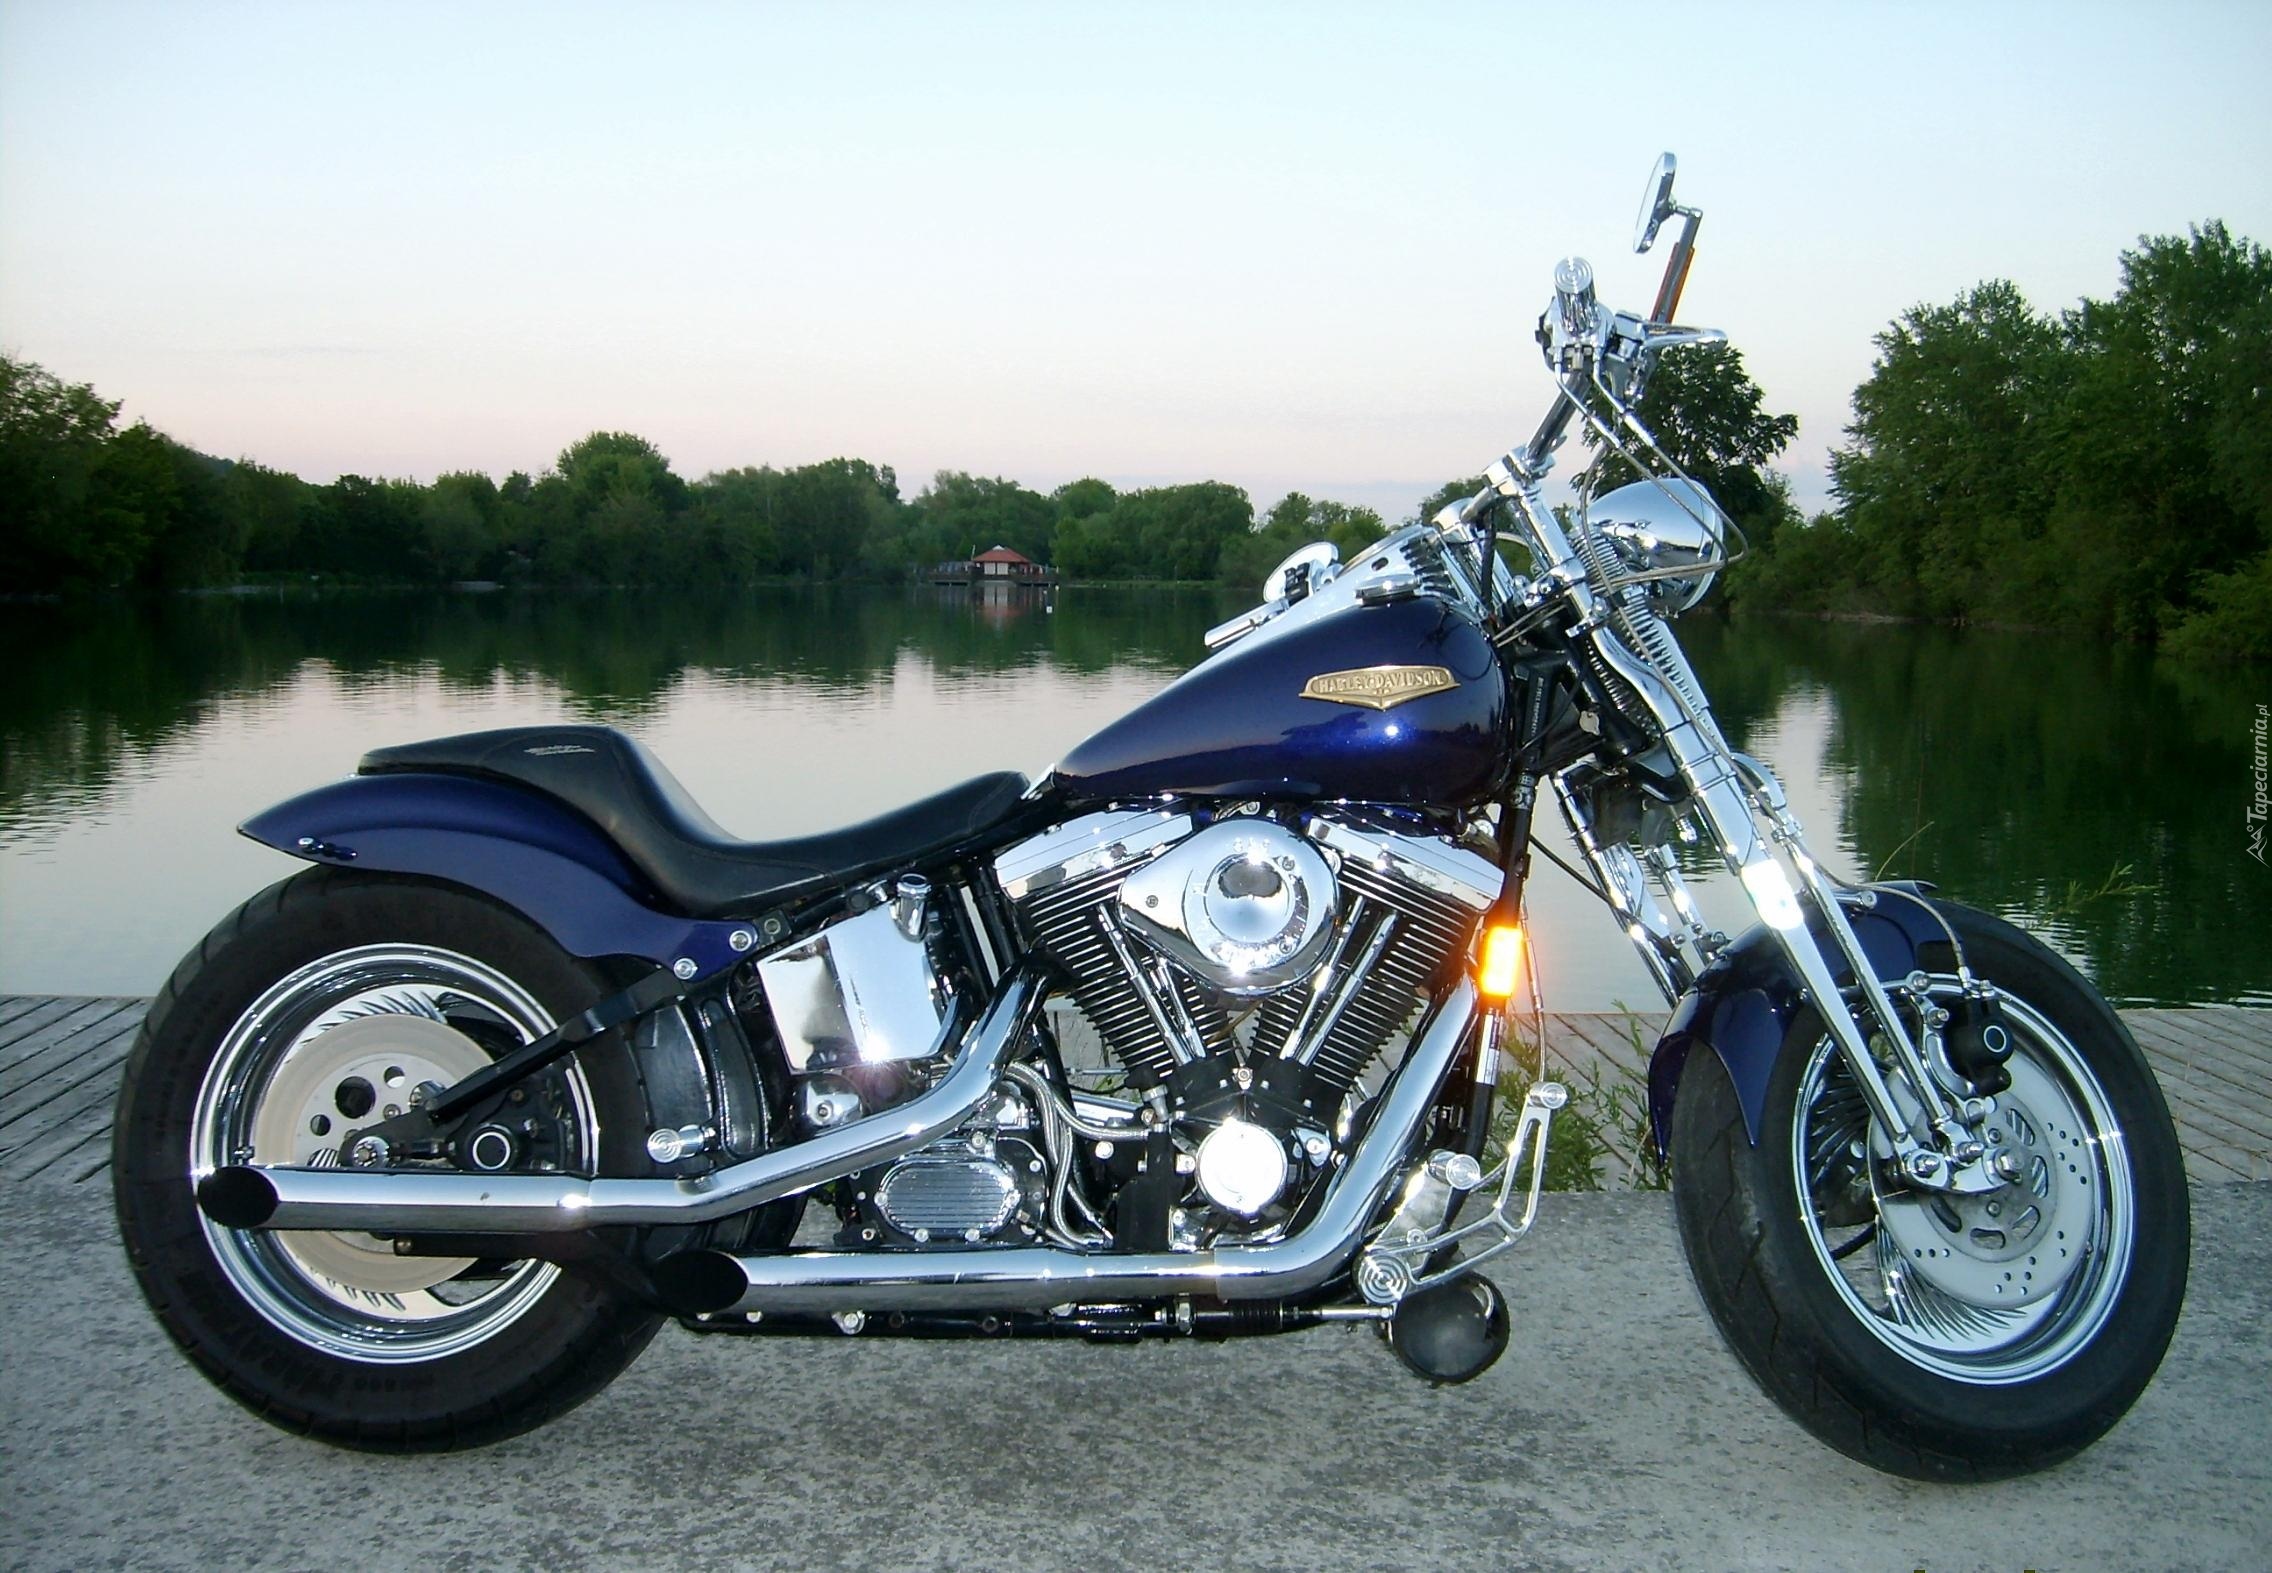 Motor, Harley-Davidson Springer